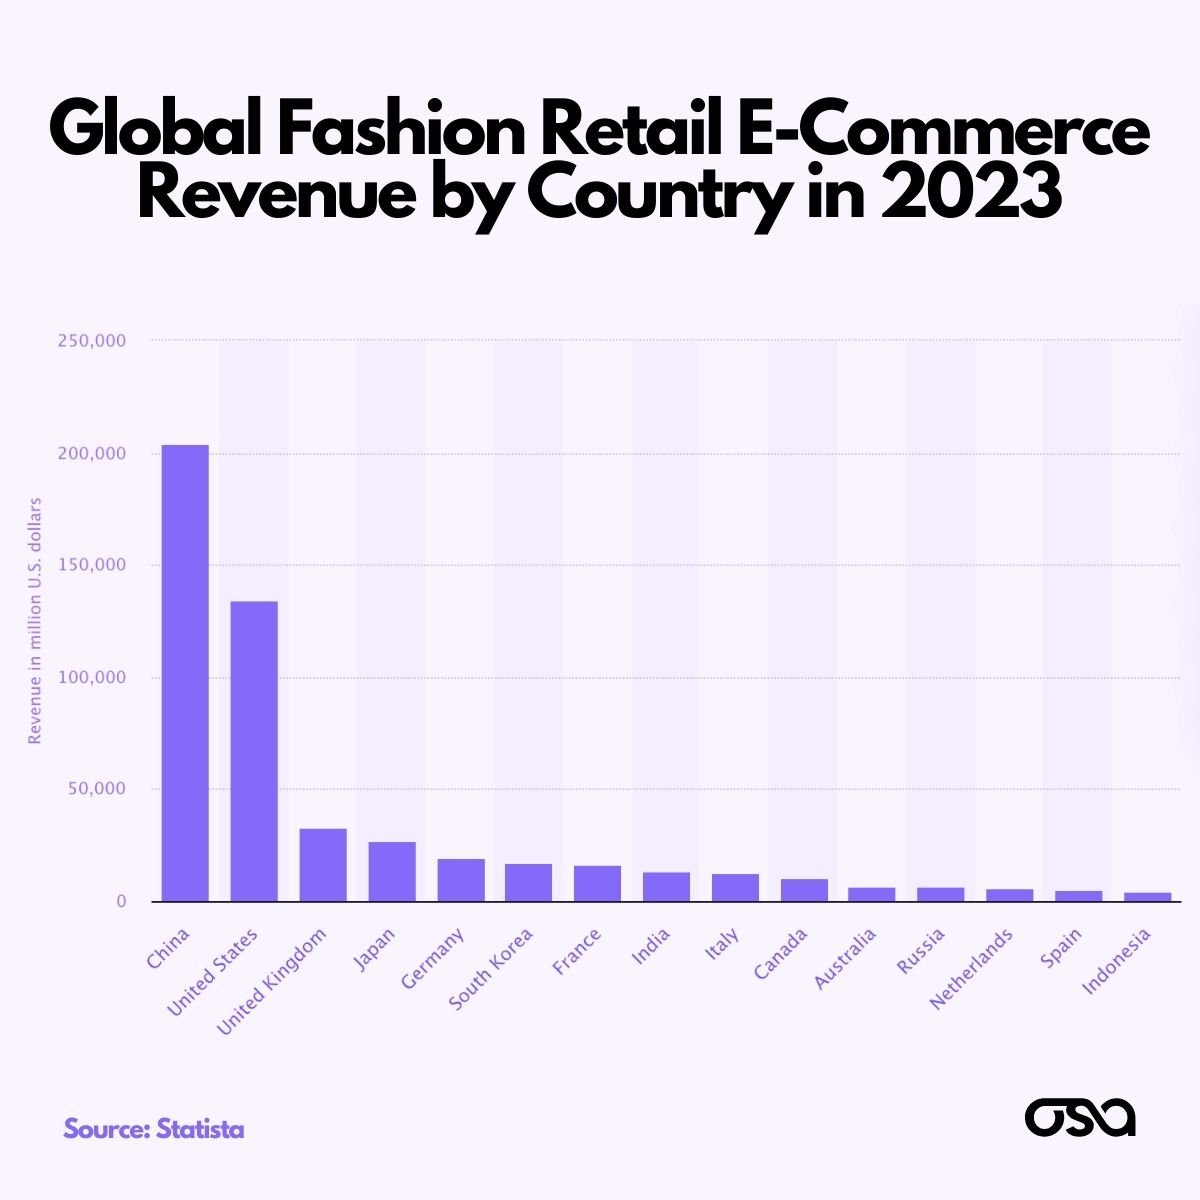 Largest Global Retail E-Commerce Economies